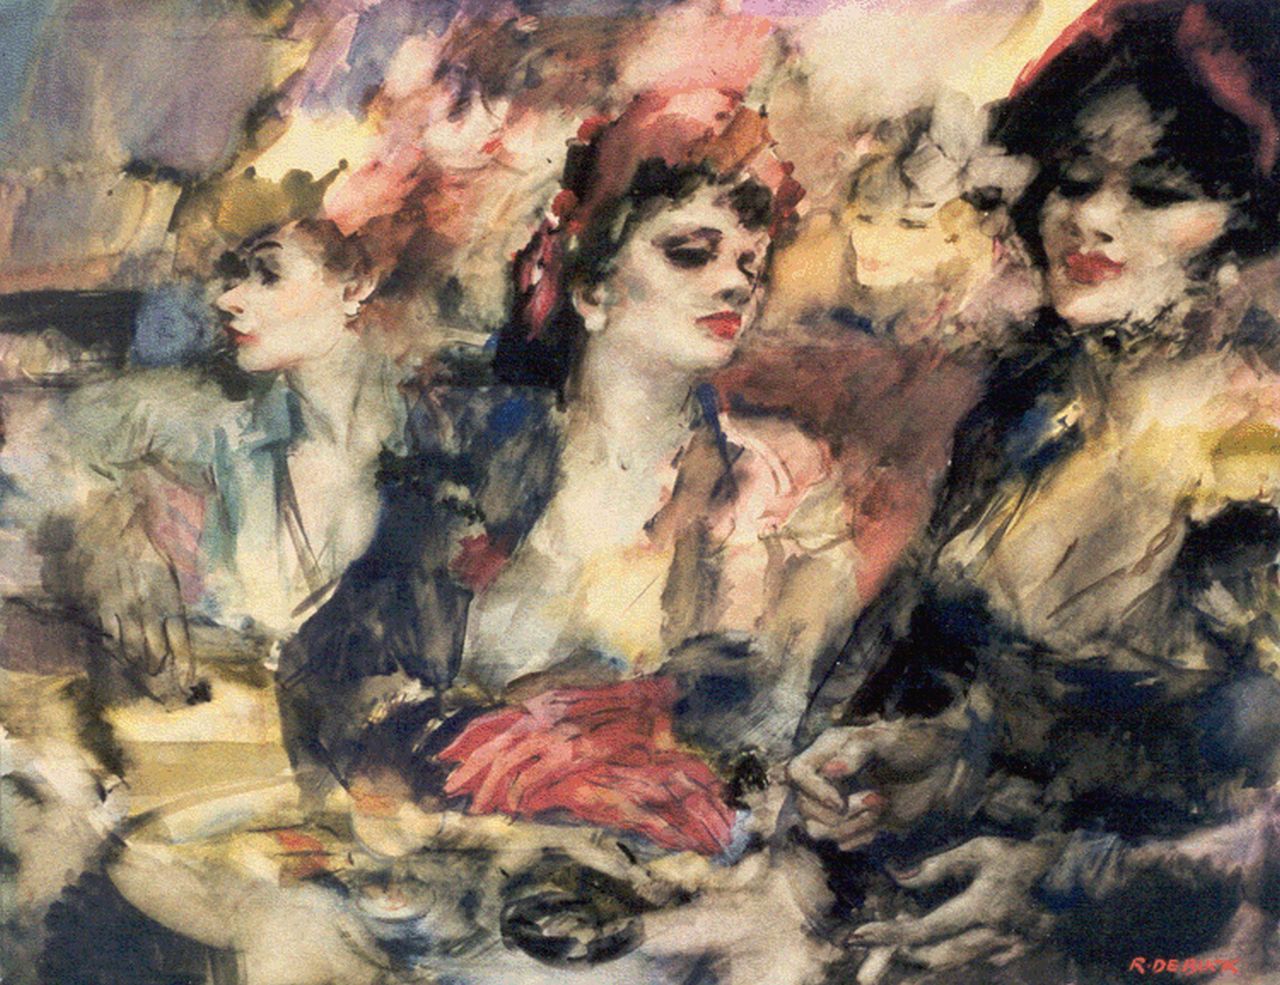 Buck R. de | Raphaël de Buck, Three women, watercolour on paper 52.0 x 67.4 cm, signed l.r.